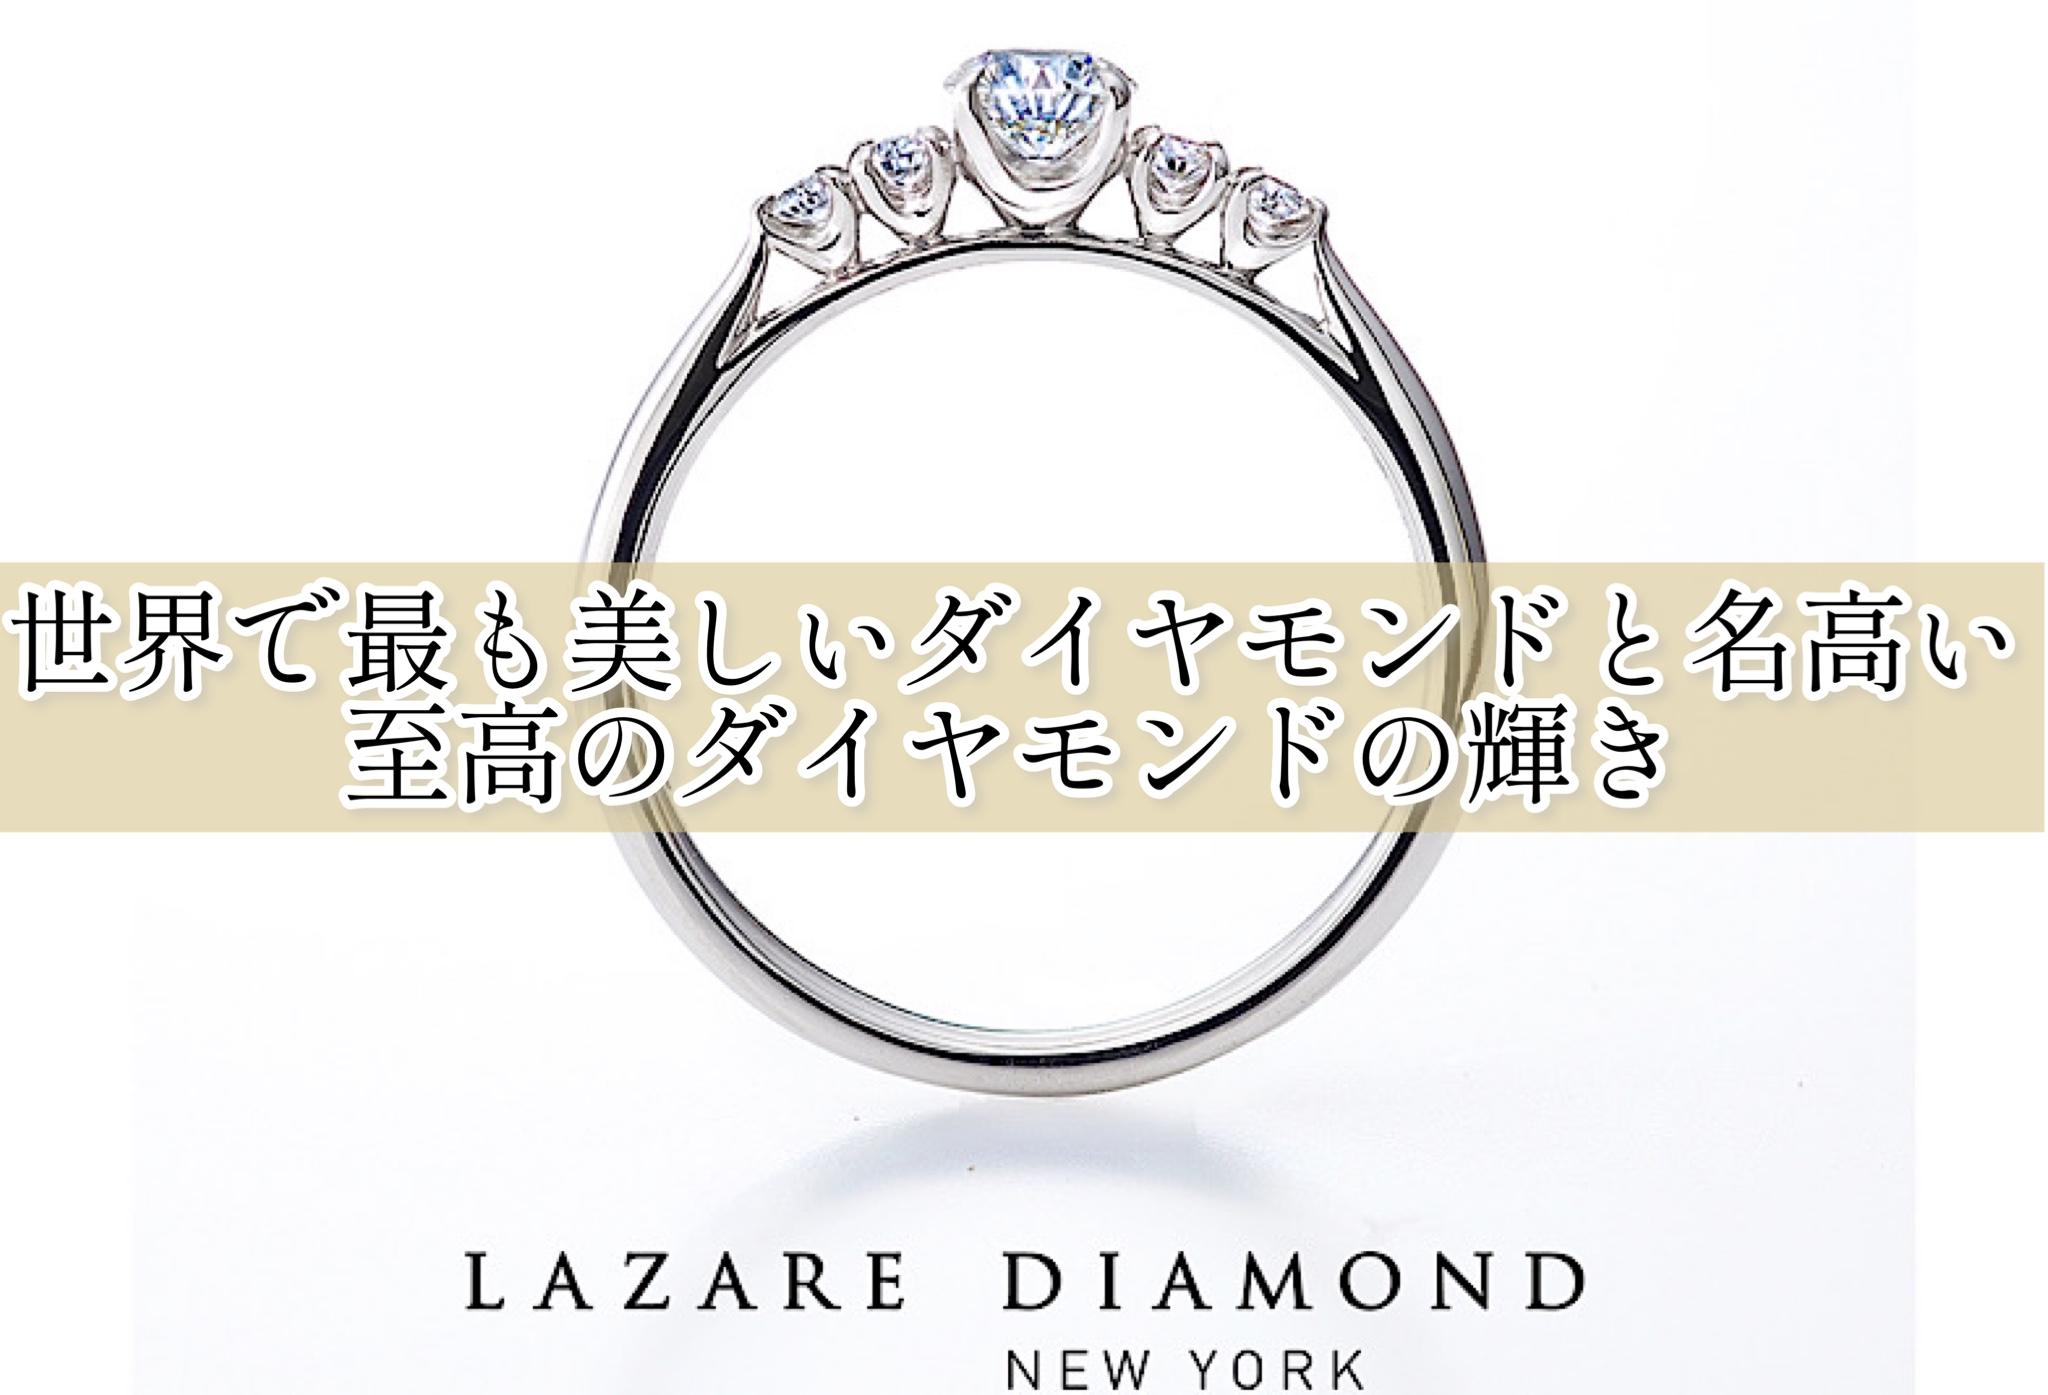 ラザールダイヤモンド　世界で最も美しいダイヤモンドと名高い至高のダイヤモンドの輝き